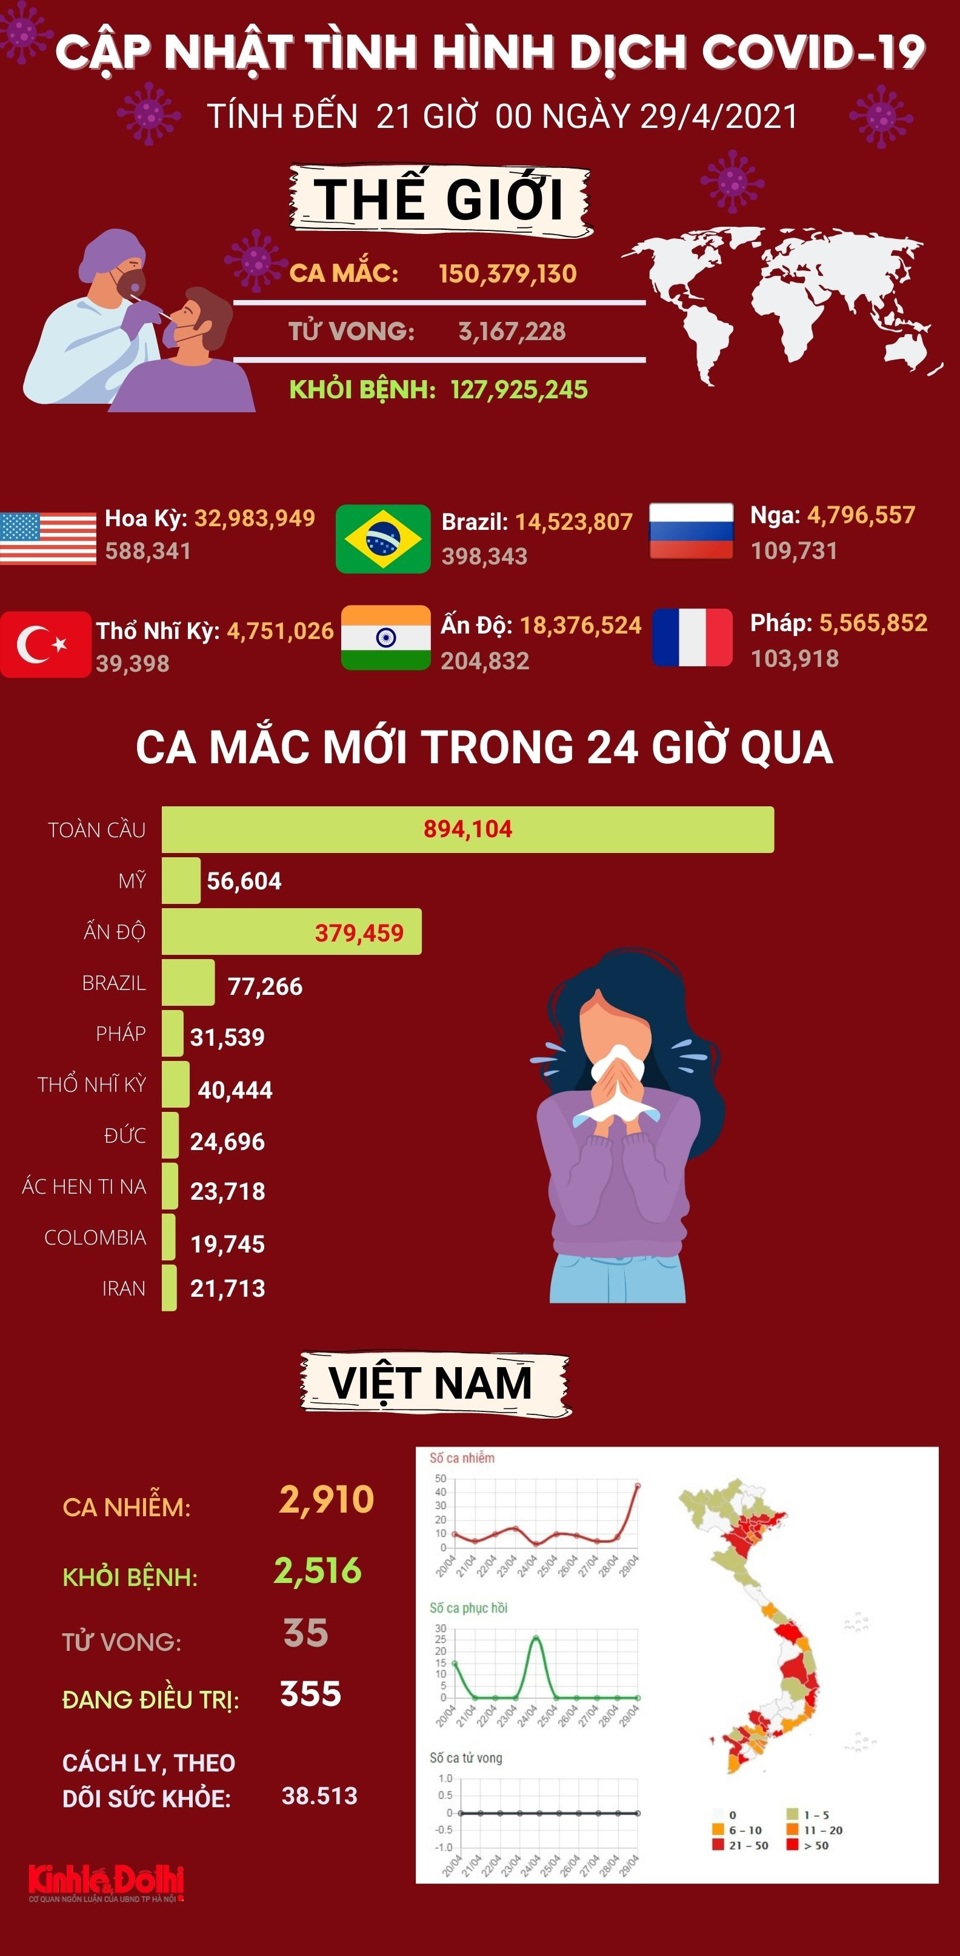 [Infographic] Thế giới vượt 150 triệu ca mắc Covid-19, cử tri Ấn Độ vẫn đi bỏ phiếu dù dịch phức tạp - Ảnh 1